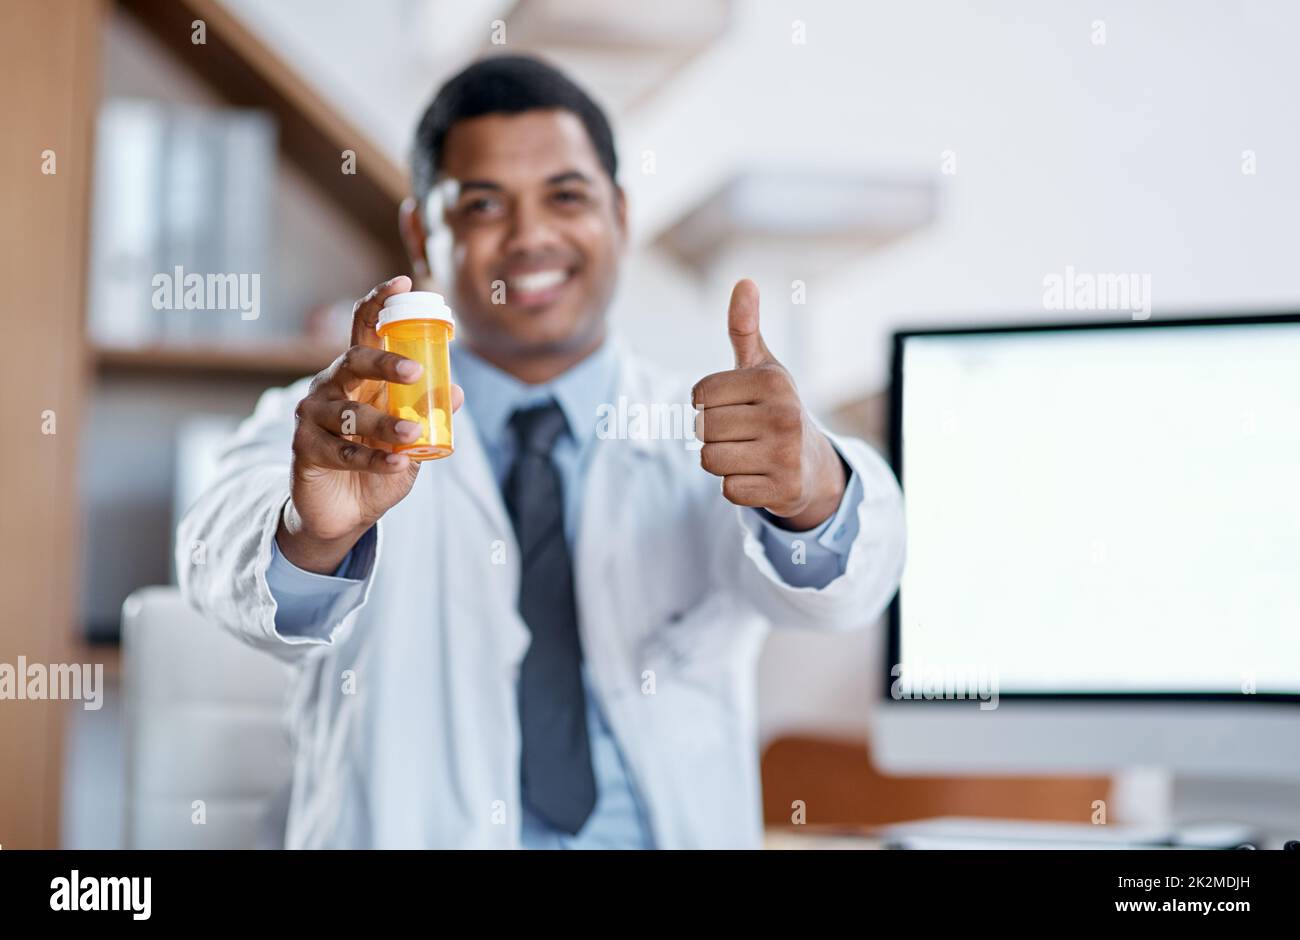 Er schreibt nur das Beste vor. Porträt eines jungen Arztes, der eine Flasche Pillen hält und in seinem Büro Daumen nach oben zeigt. Stockfoto